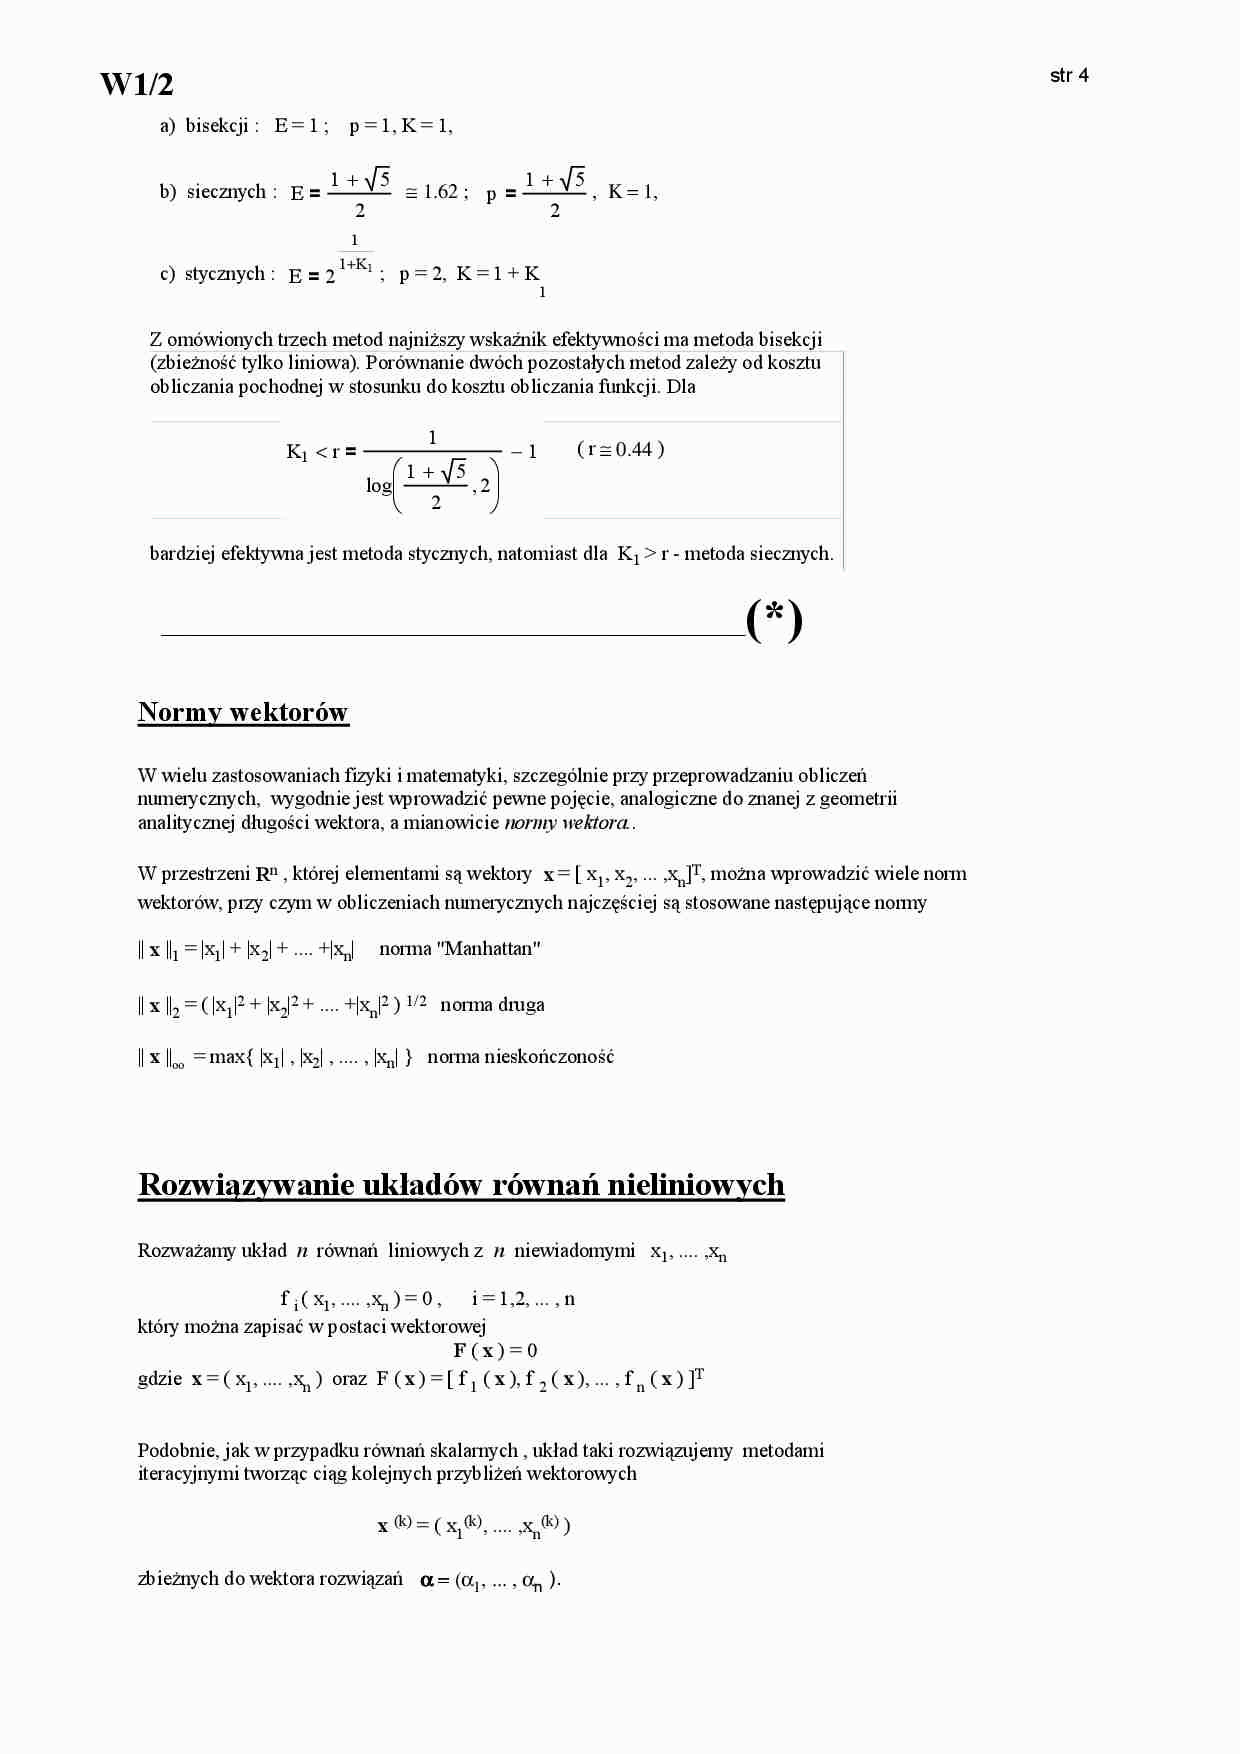 Rozwiązywanie układów równań nieliniowych - omówienie  - strona 1